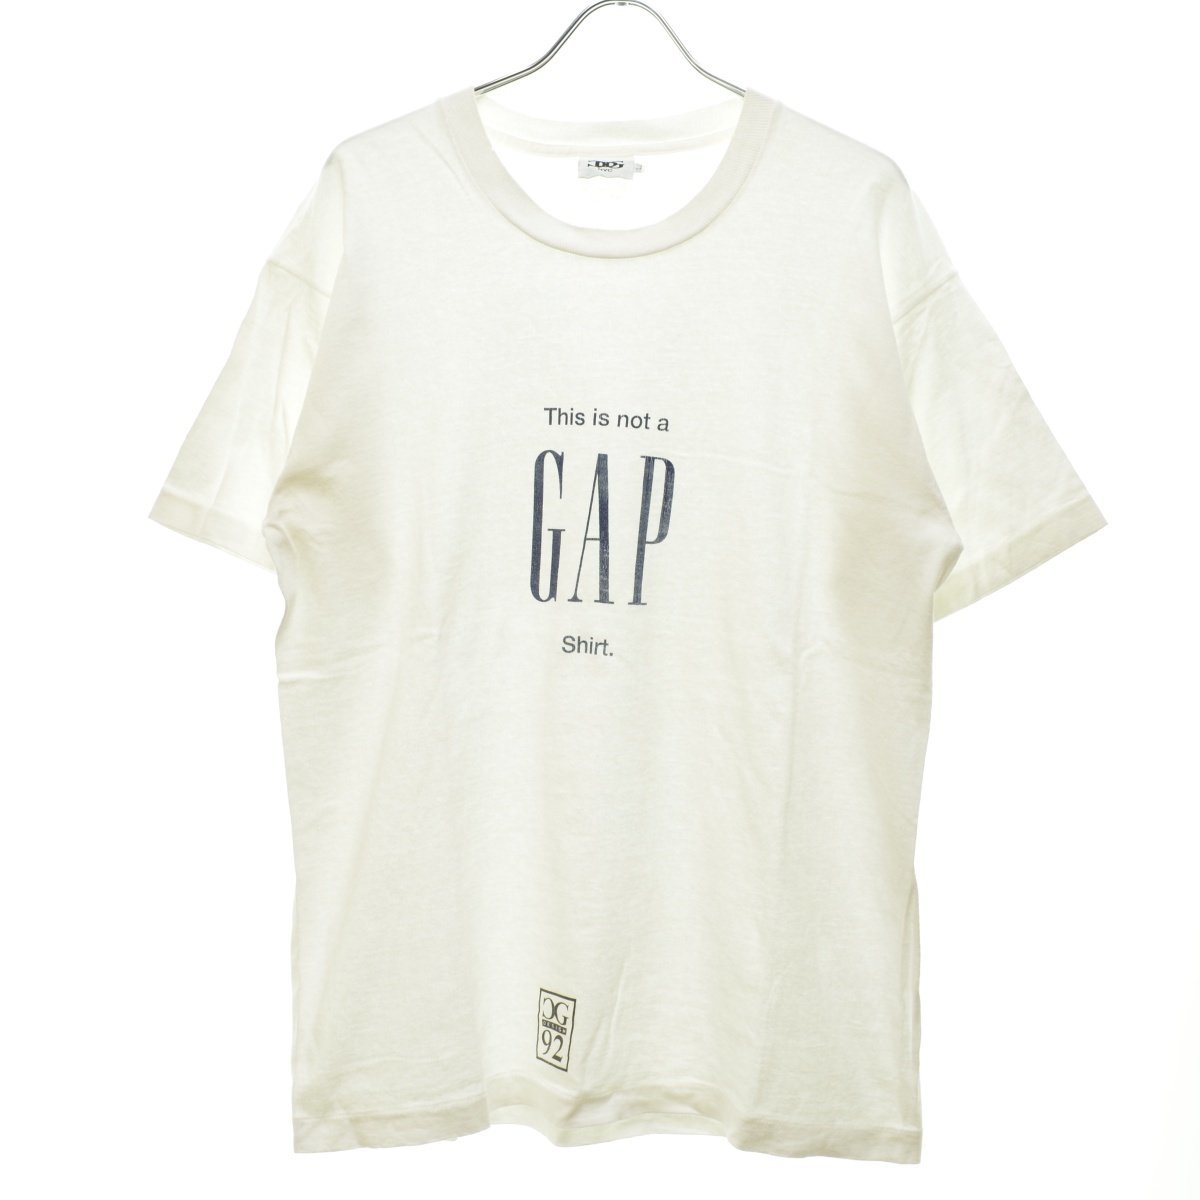 割引発見 半袖Tシャツ shirt GAP a not is This 92年 90s デザイン シージー / DESIGN 【Lサイズ】CG vintage アートt ヴィンテージ ビンテージ その他